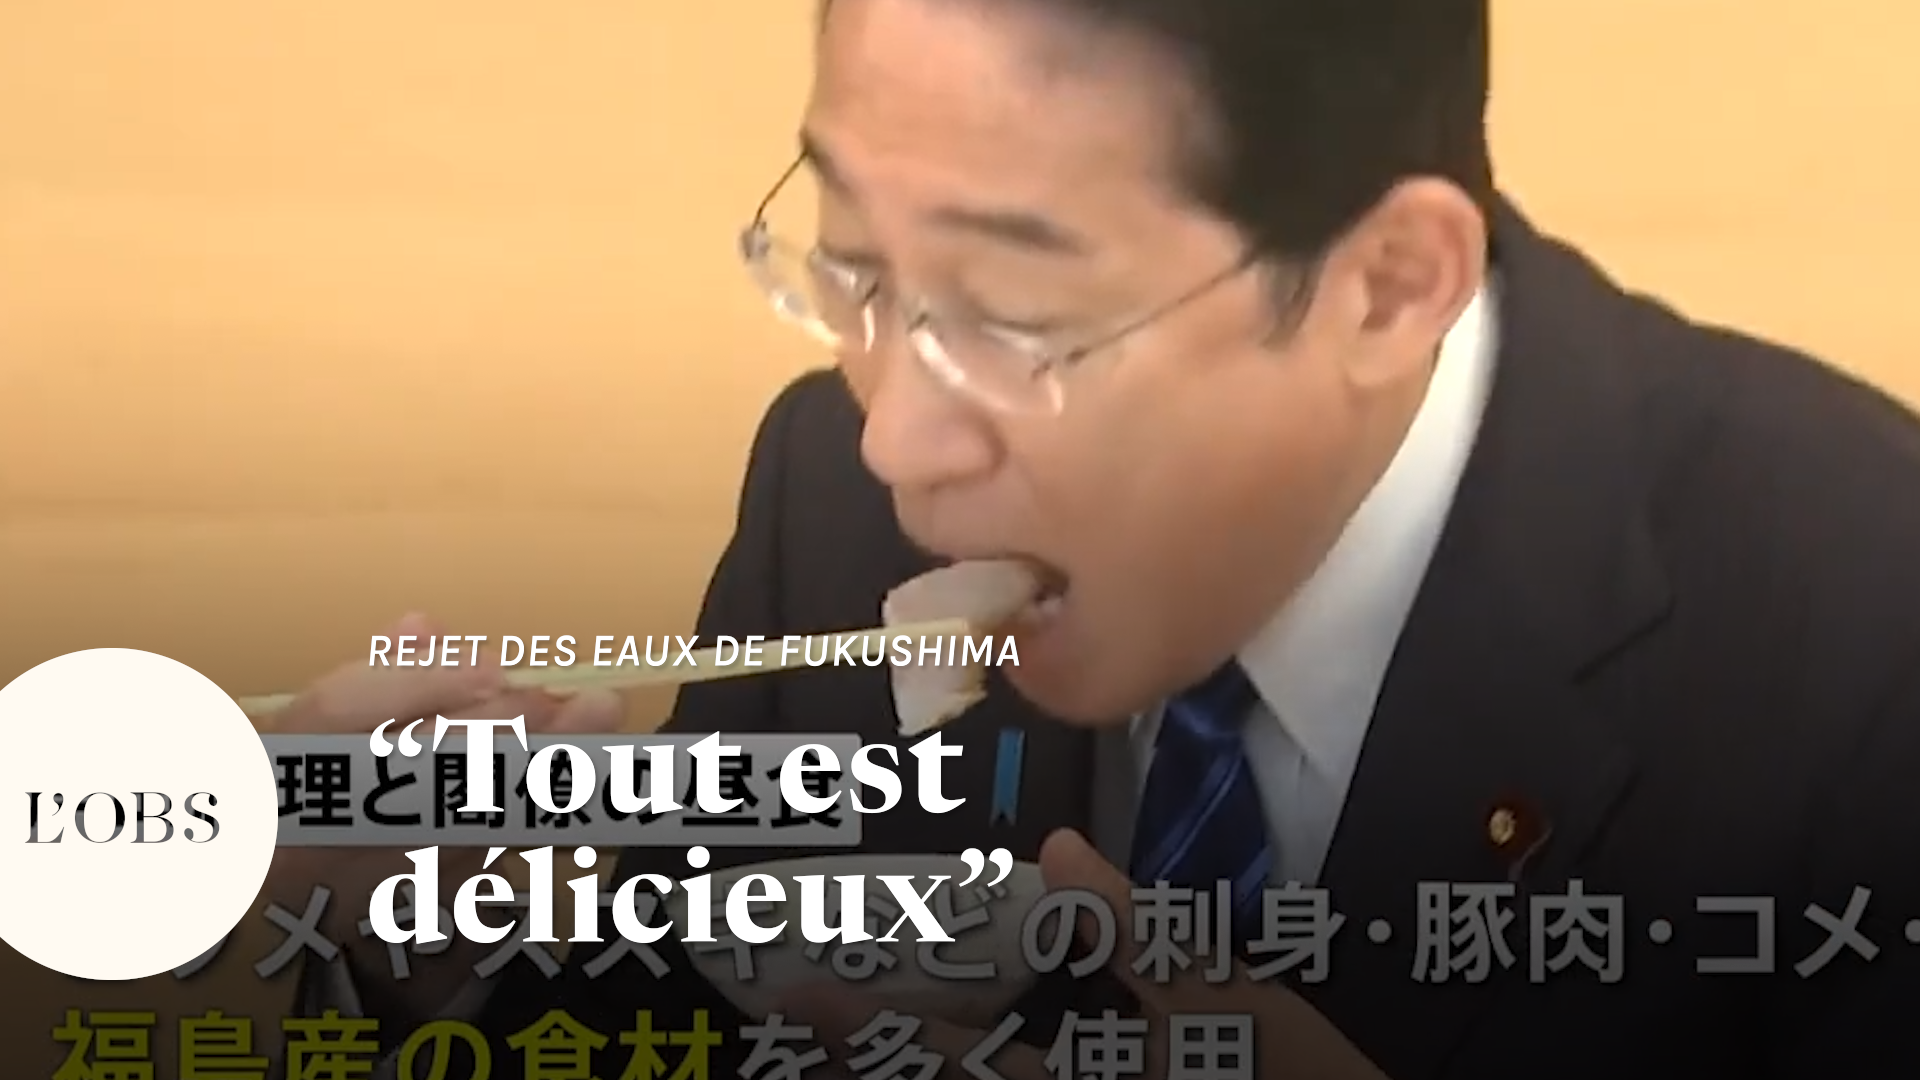 Rejet des eaux de Fukushima : le Premier ministre du Japon mange du poisson de la région